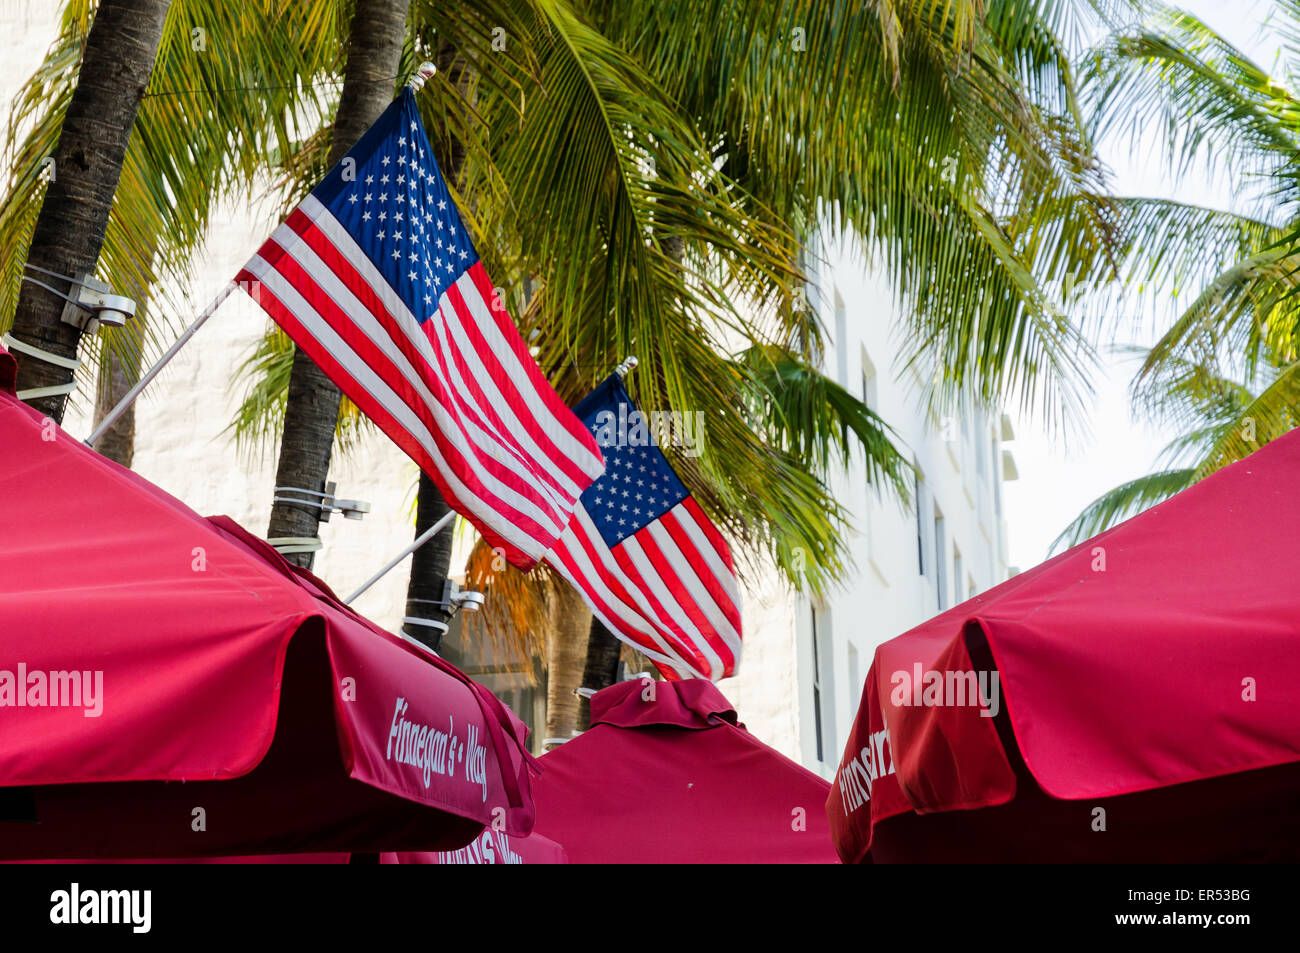 Blick auf Miami Beach, Florida und Umgebung: die Stadt bei Tageslicht Stockfoto